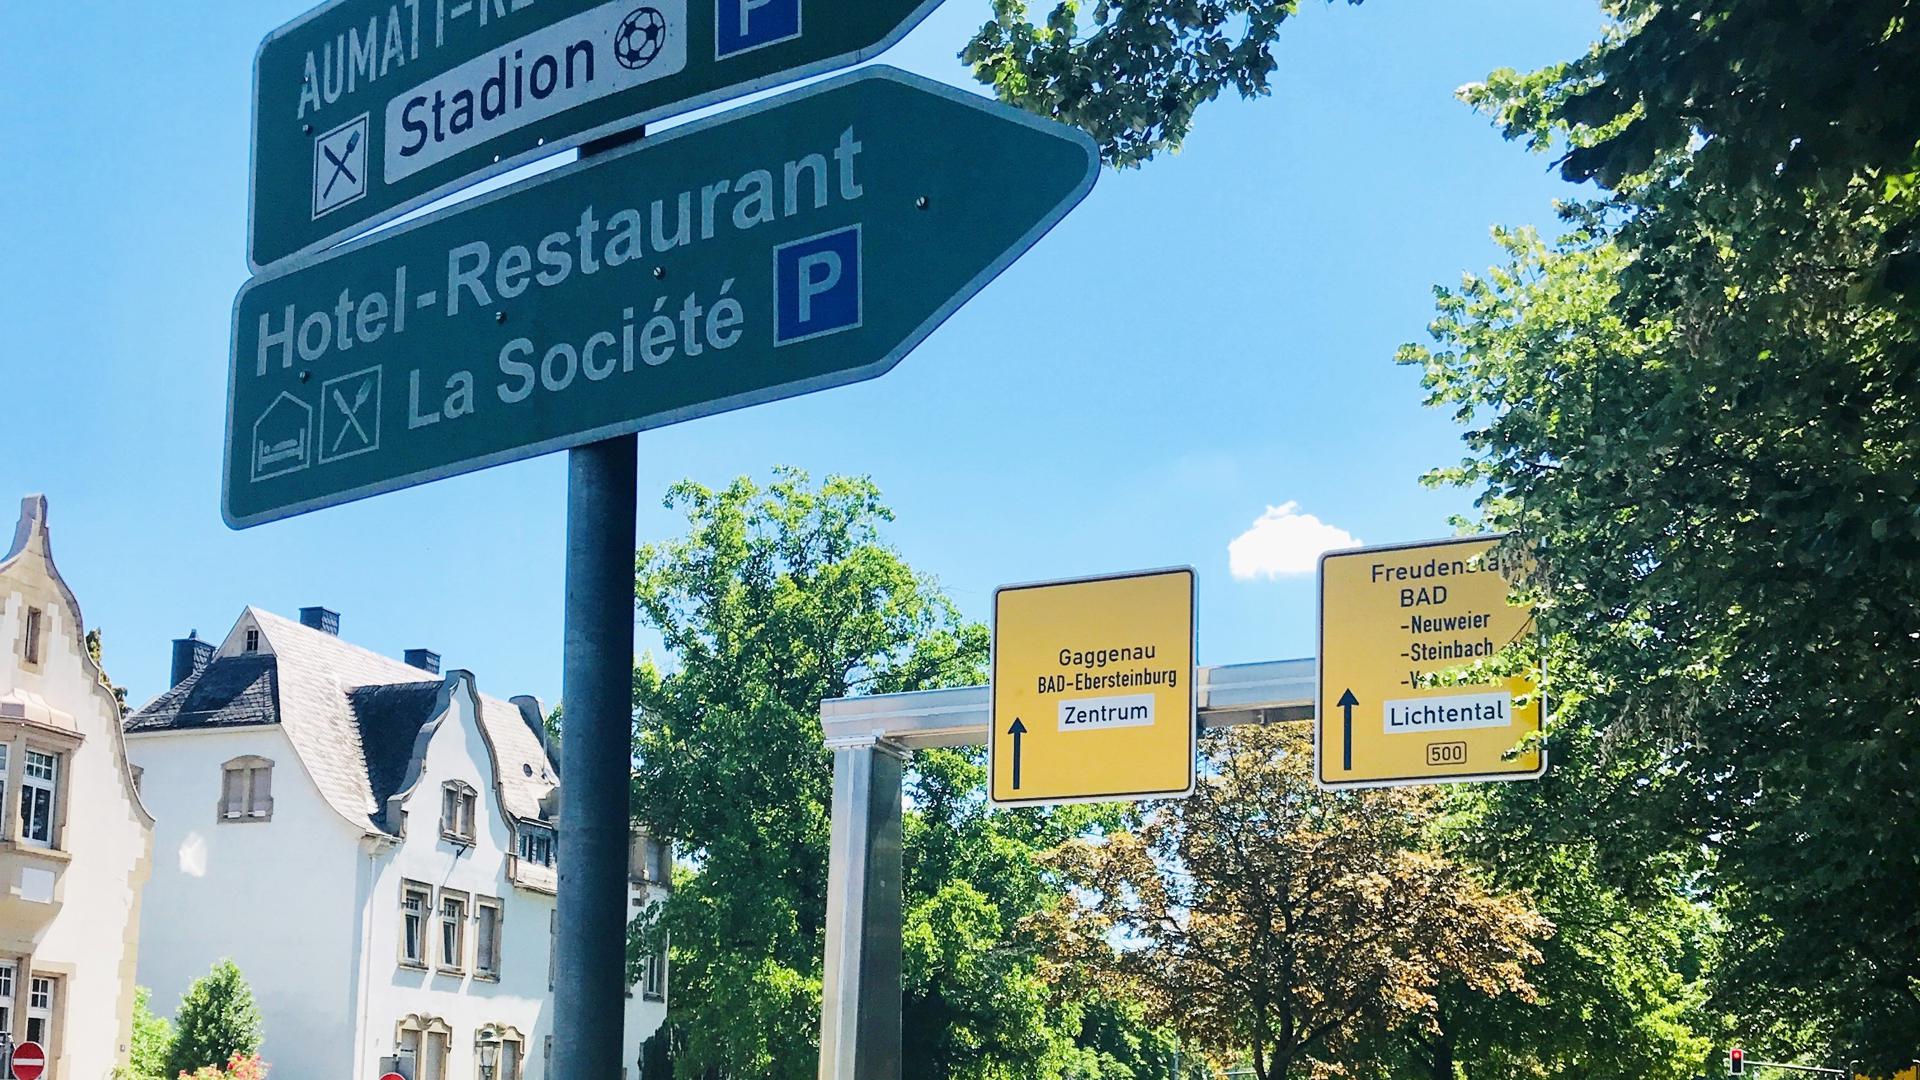 Wer hat alle Verkehrszeichen im Blick? Der Schilderwald gedeiht auch in Baden-Baden prächtig.